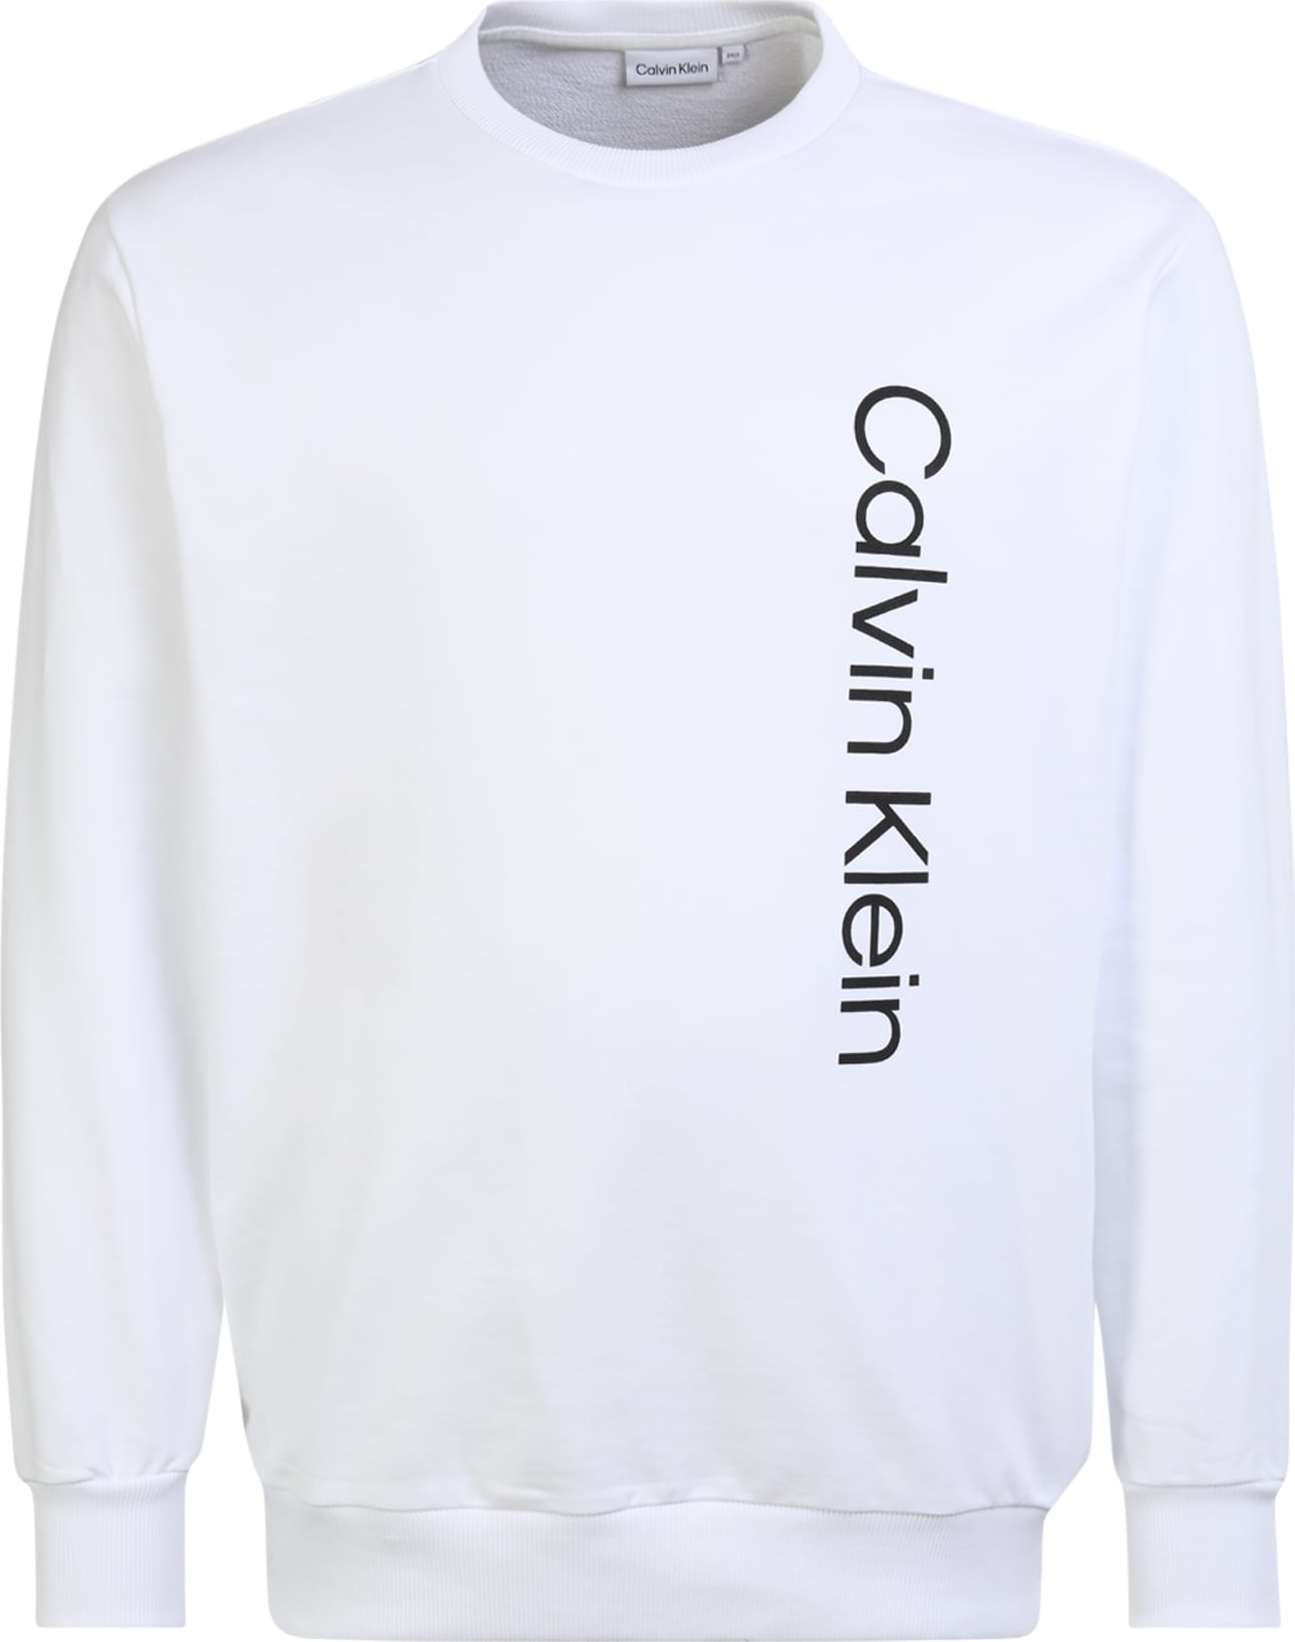 Mikina Calvin Klein Big & Tall černá / bílá